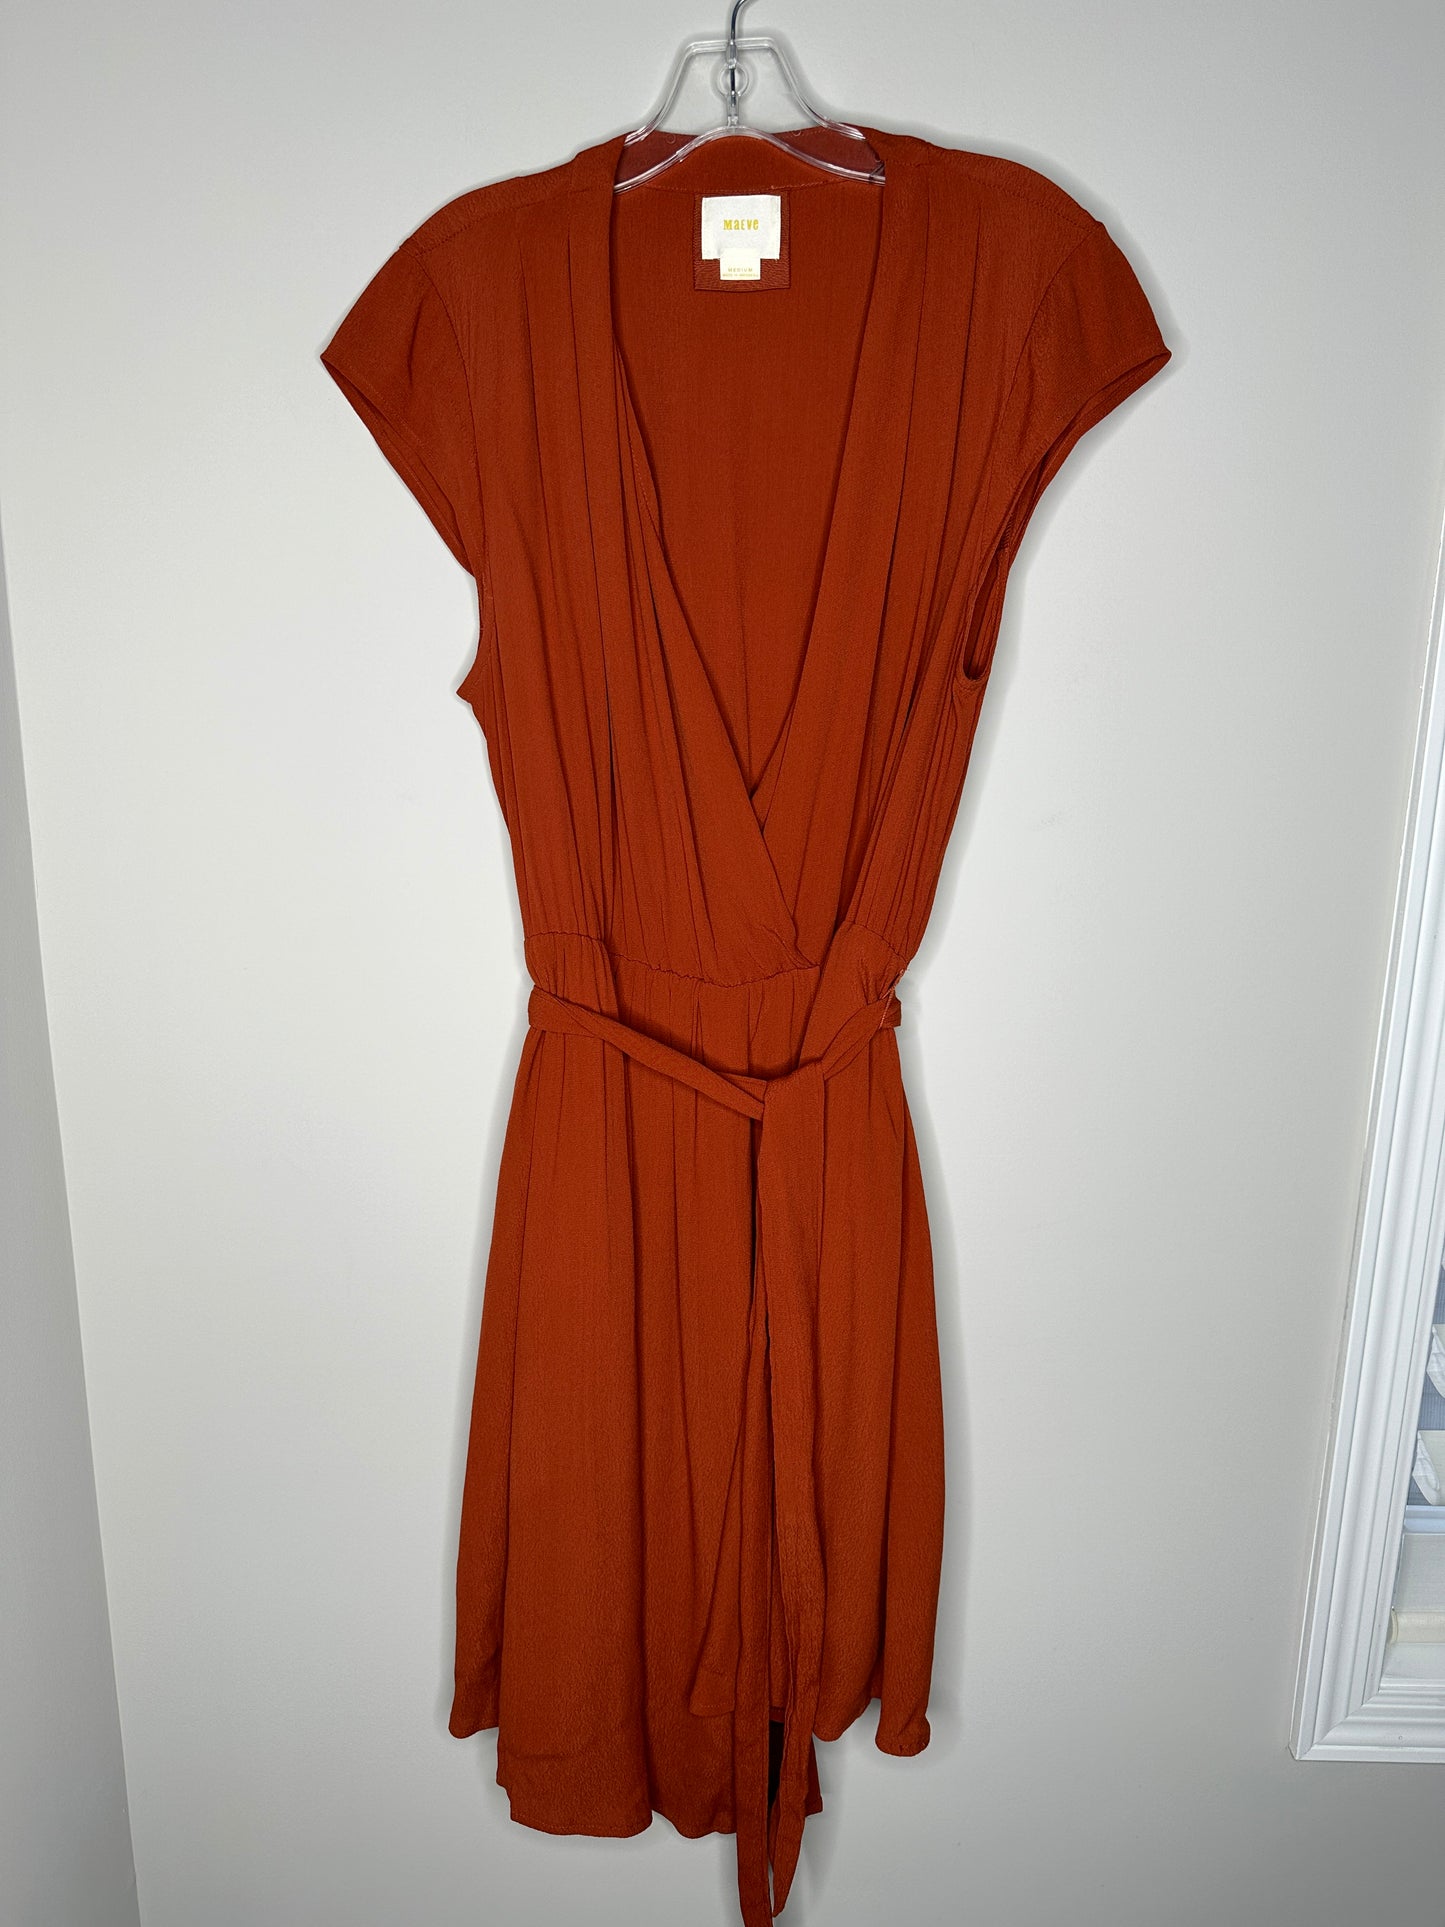 Maeve Size M Rust Orange V-Neck Wrap Style Cap Sleeve Midi Dress